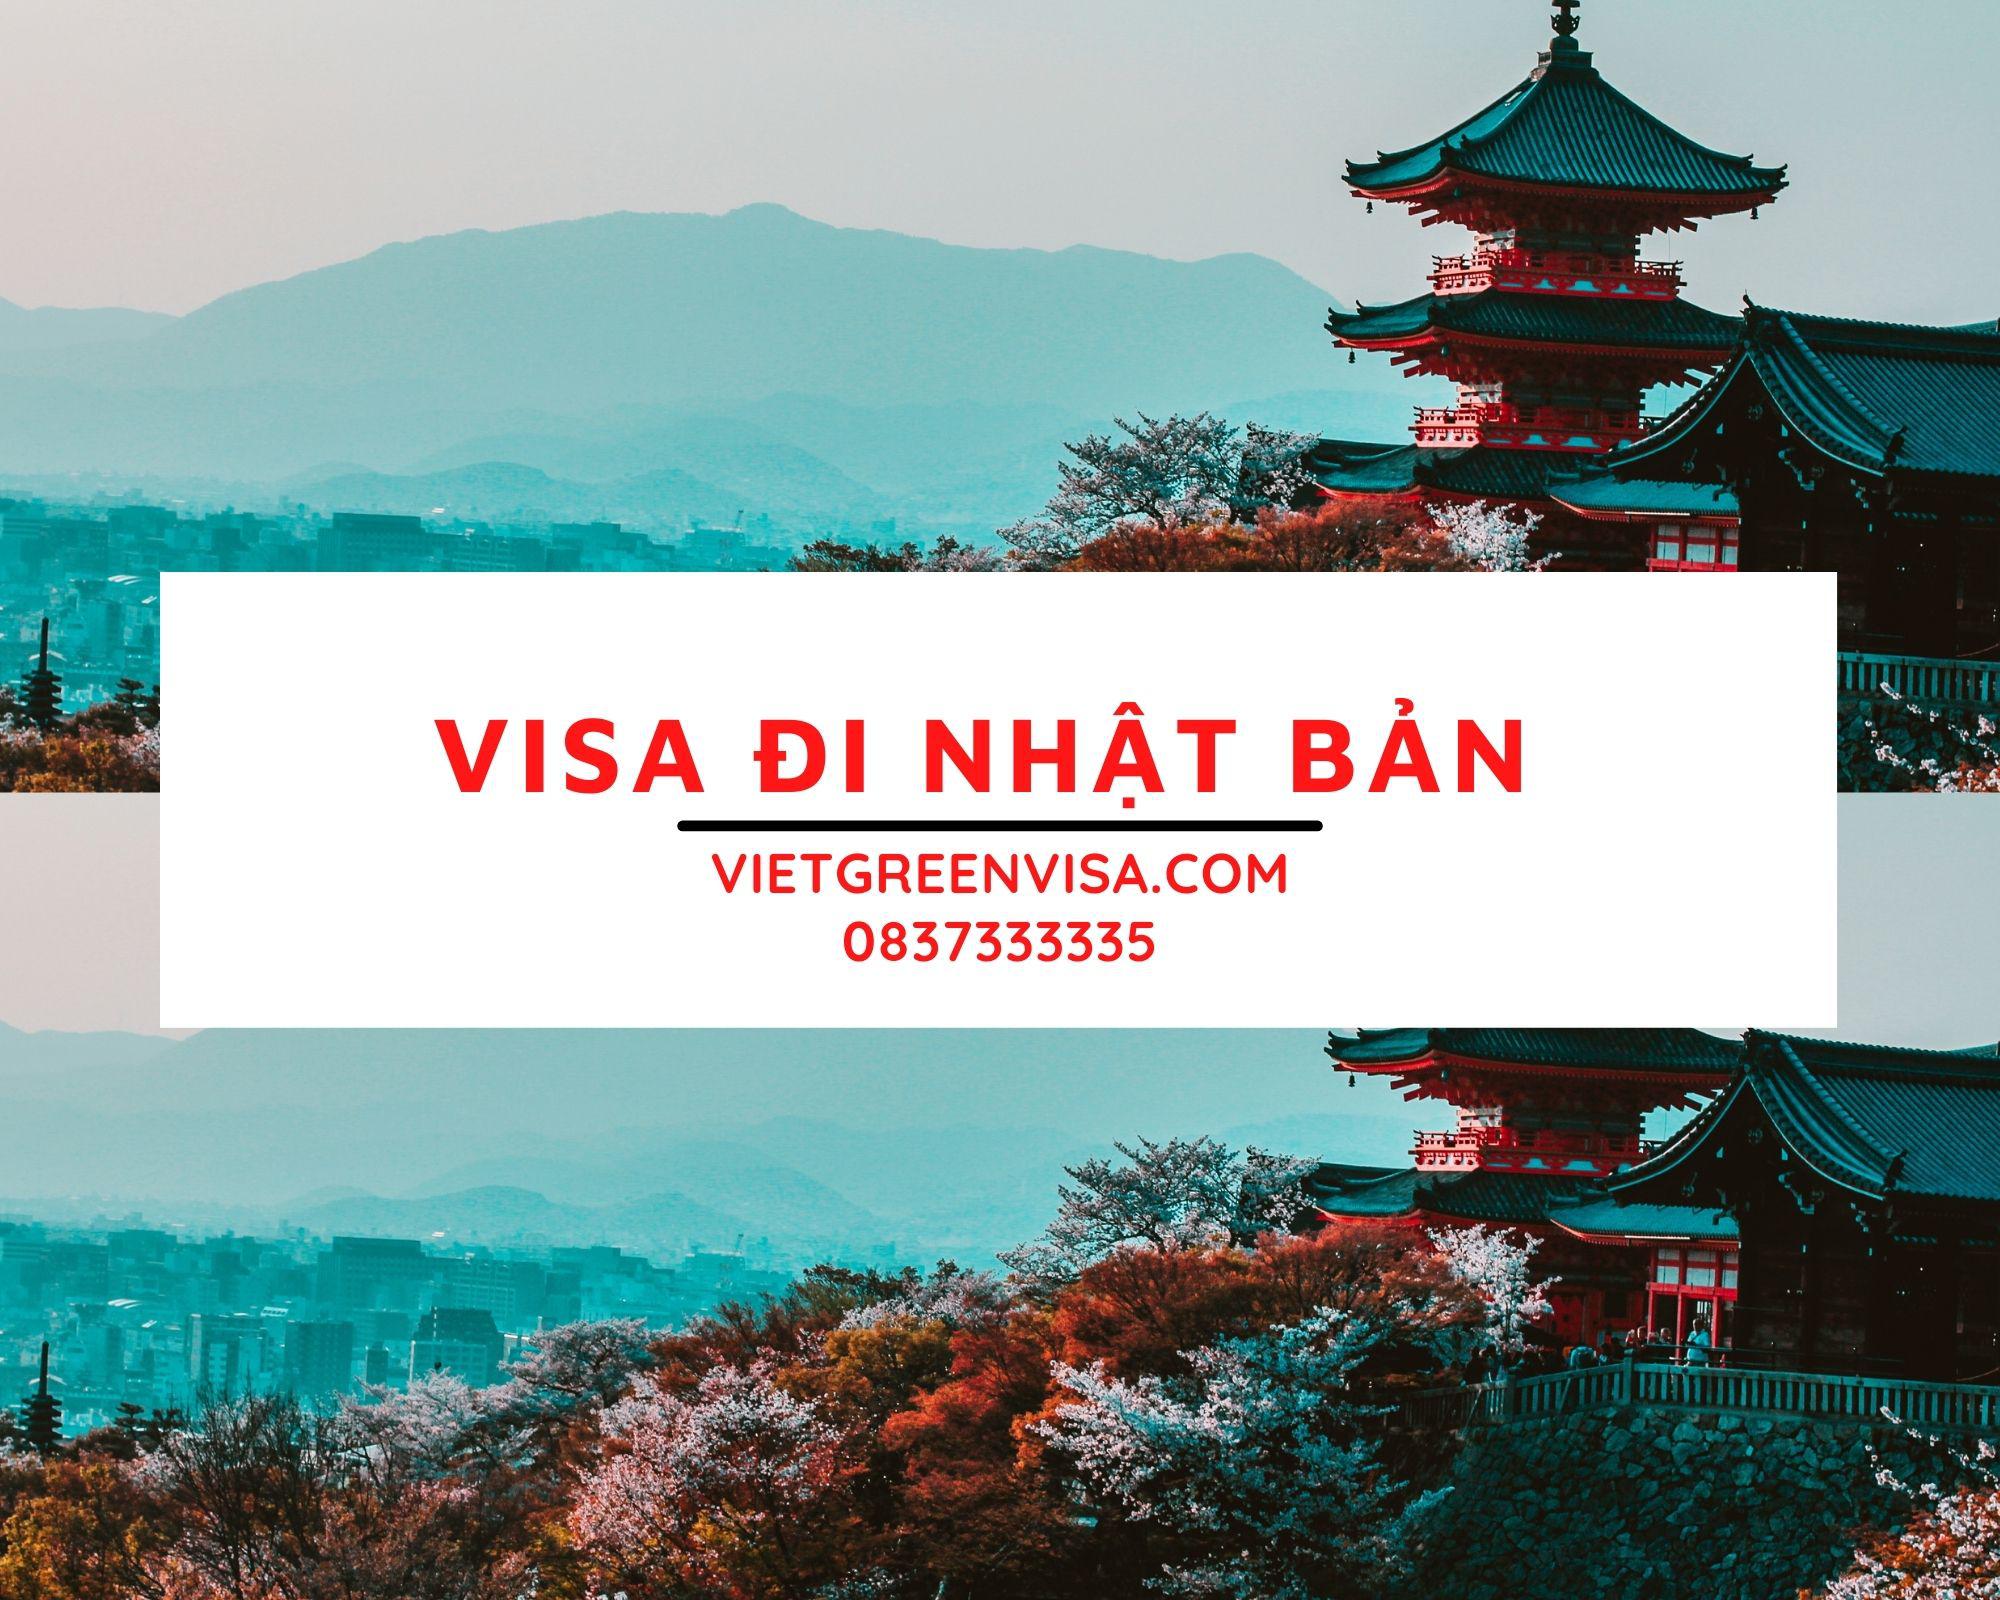 Dịch vụ xin Visa Nhật Bản trọn gói tại Hà Nội, Hồ Chí Minh